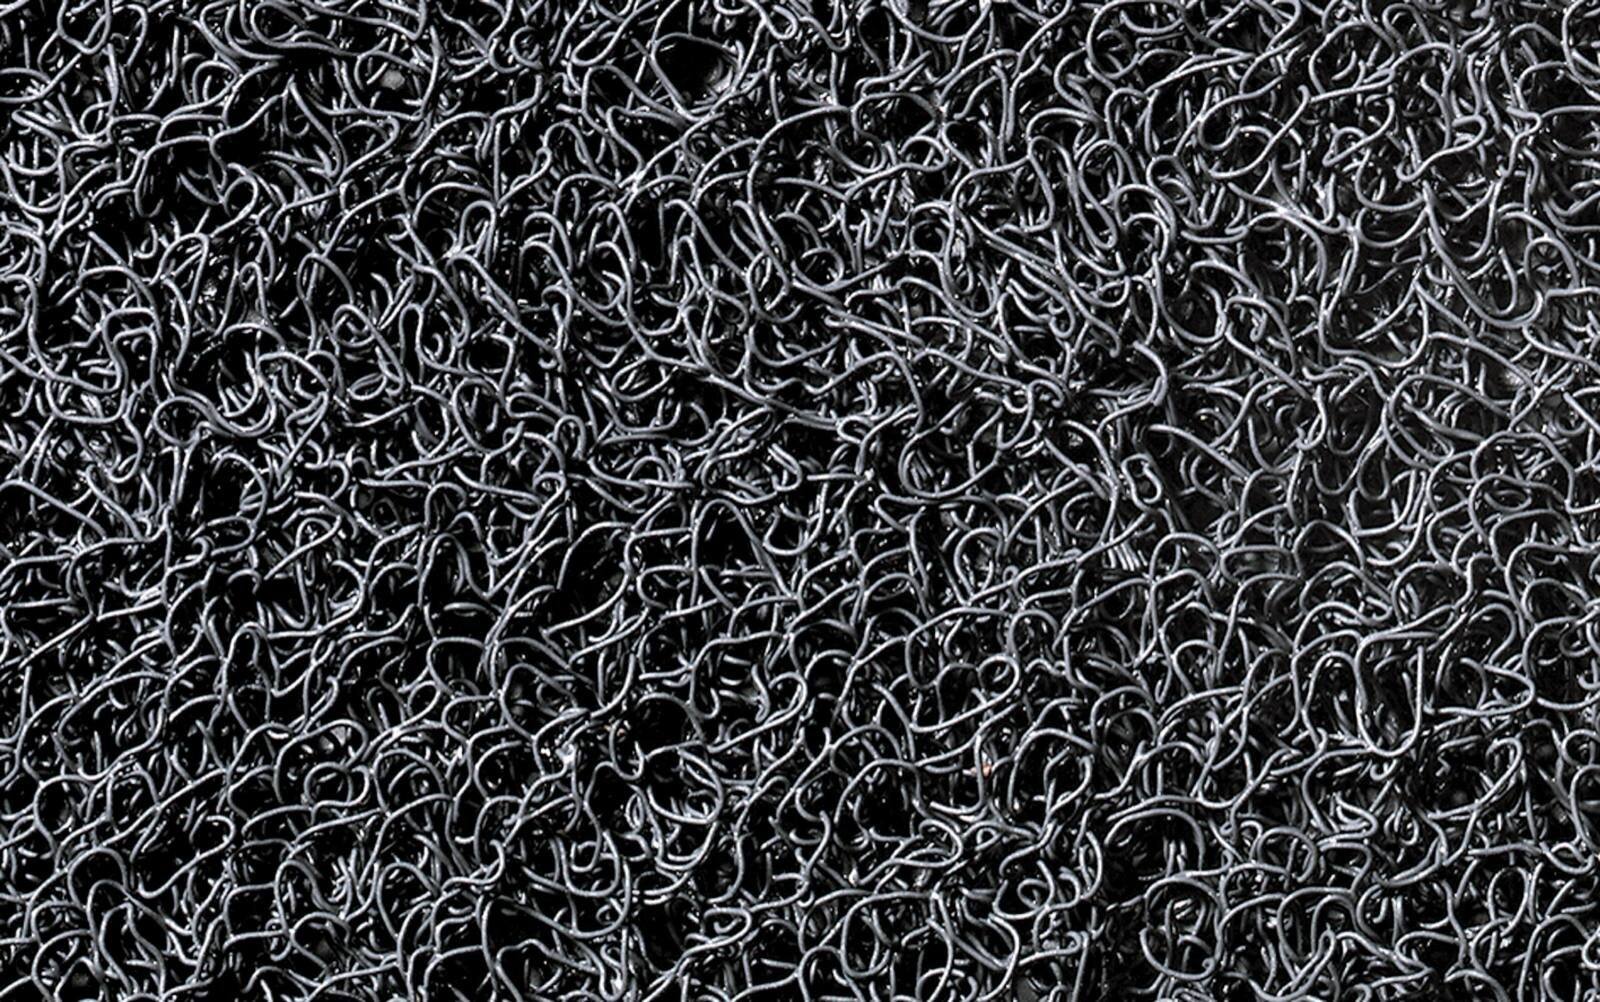 3M Tapis de propreté Nomad Terra 8200, gris, 9m x 1,2m